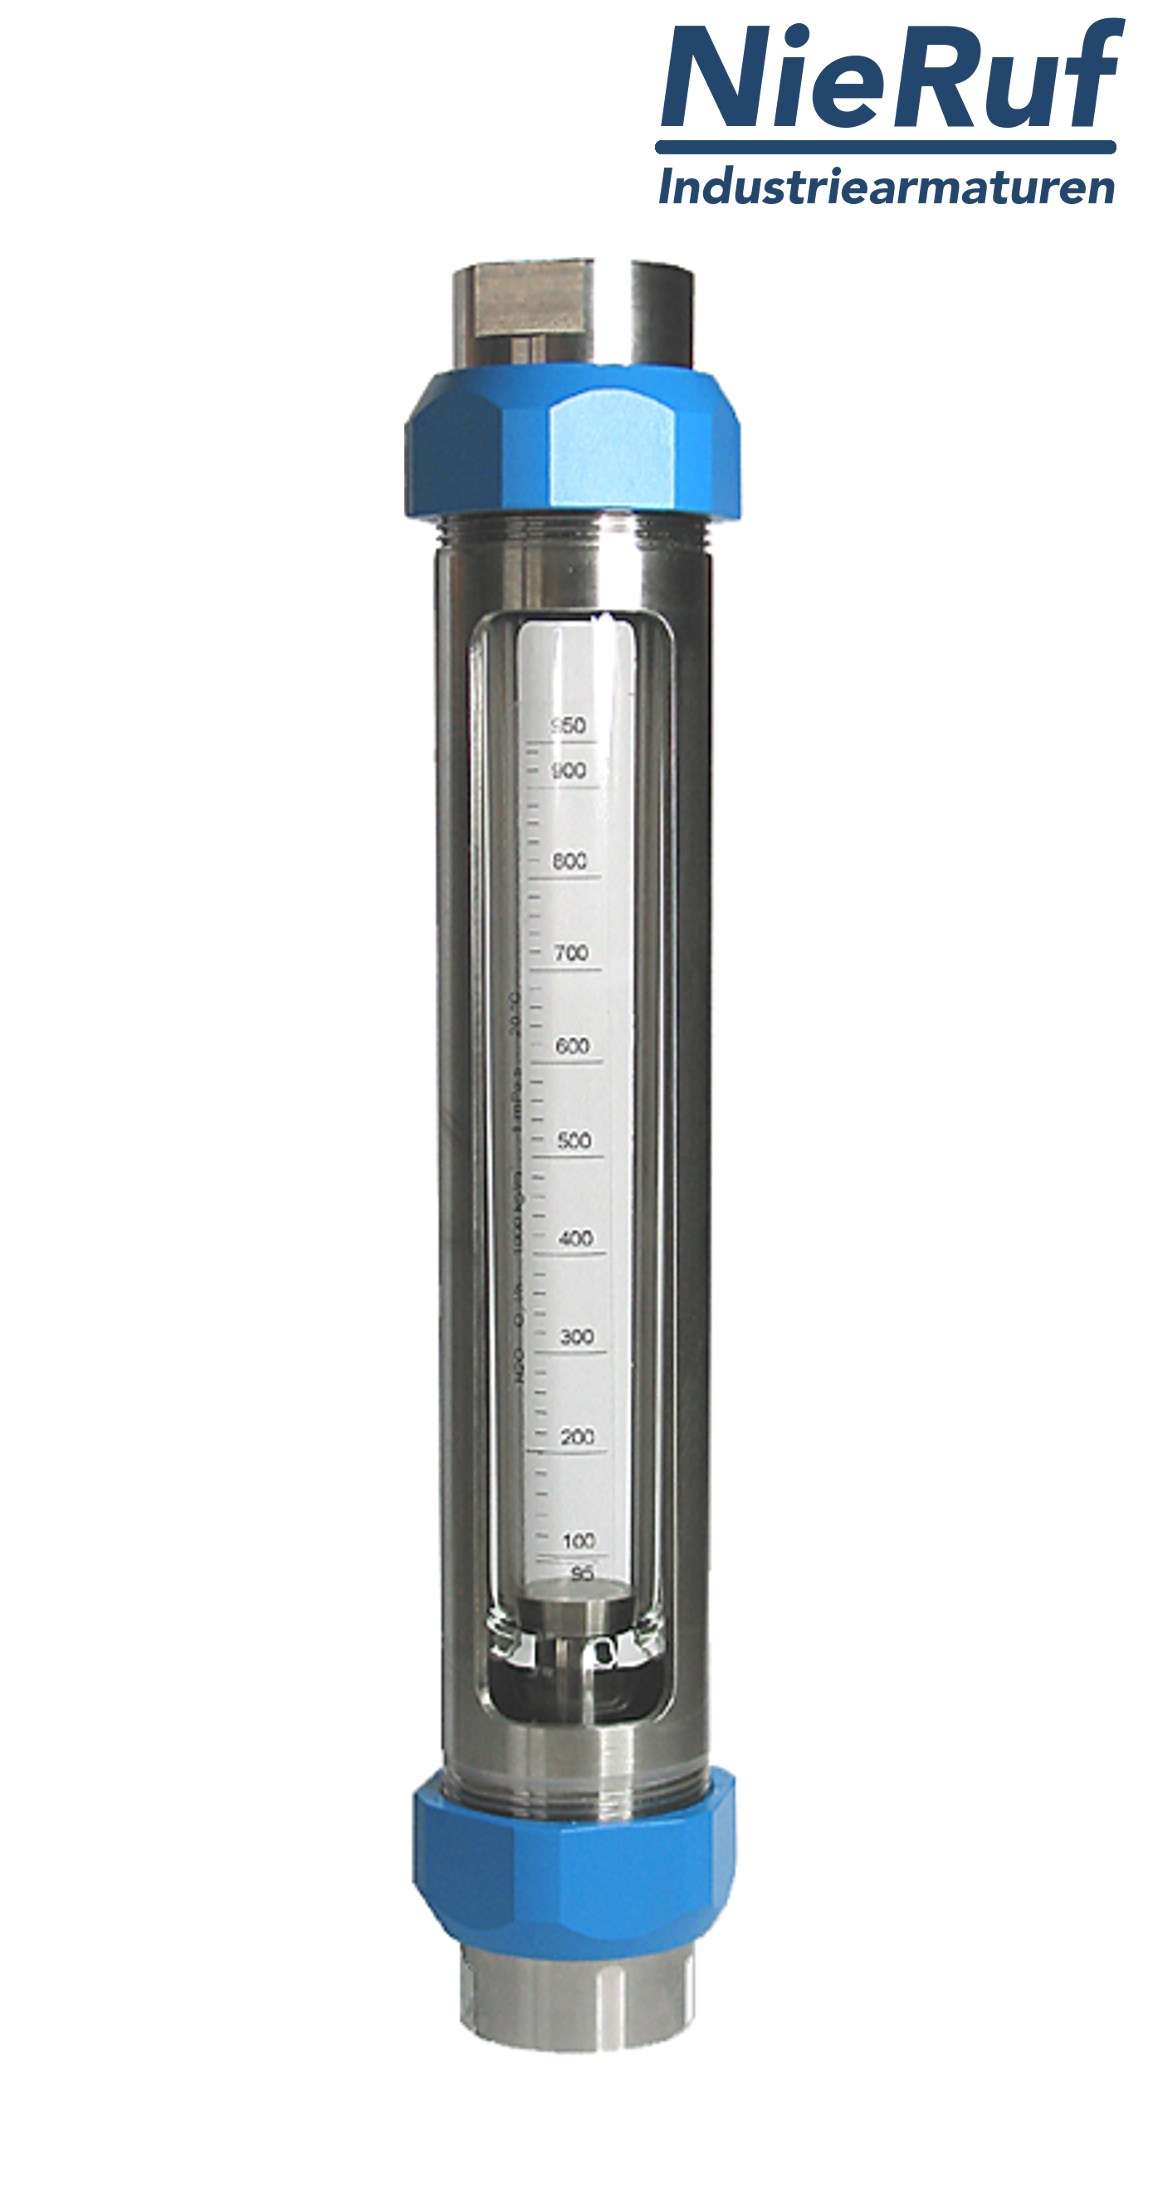 débitmètre à flotteur en acier inoxydable 1 1/2" pouce 1000,0 - 10000 l/h eau FKM